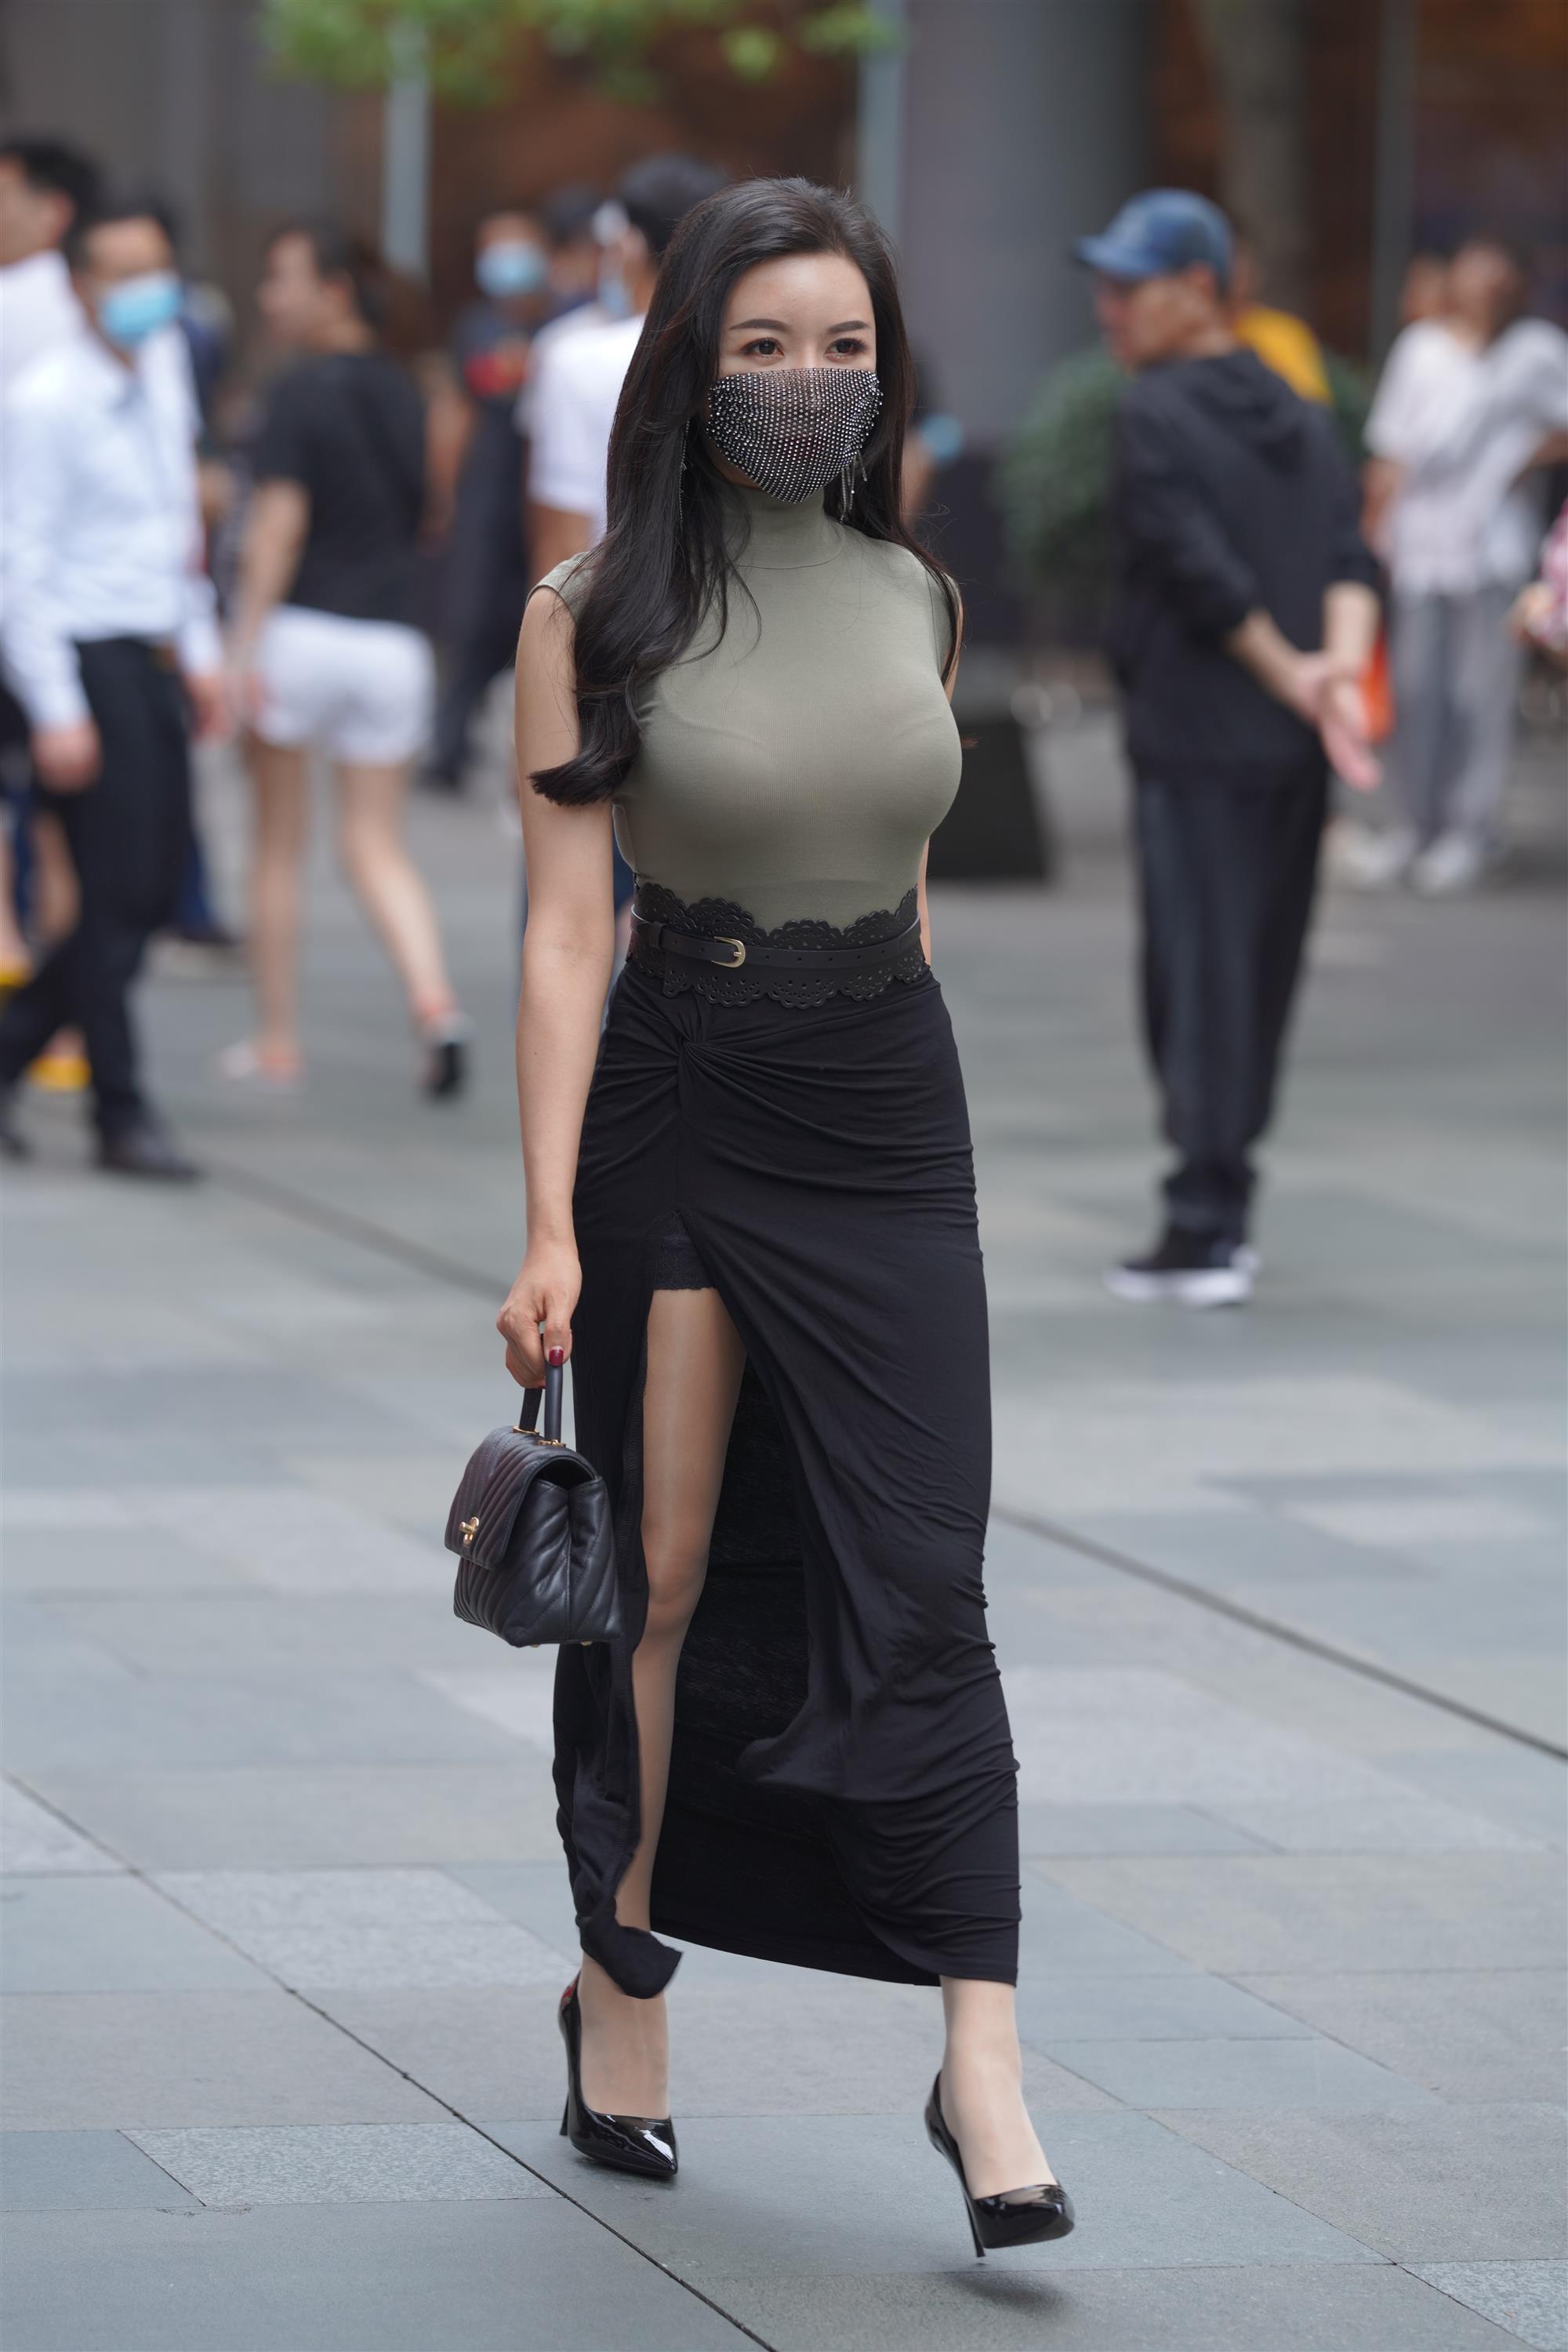 Street 欣儿 Long black skirt - 72.jpg